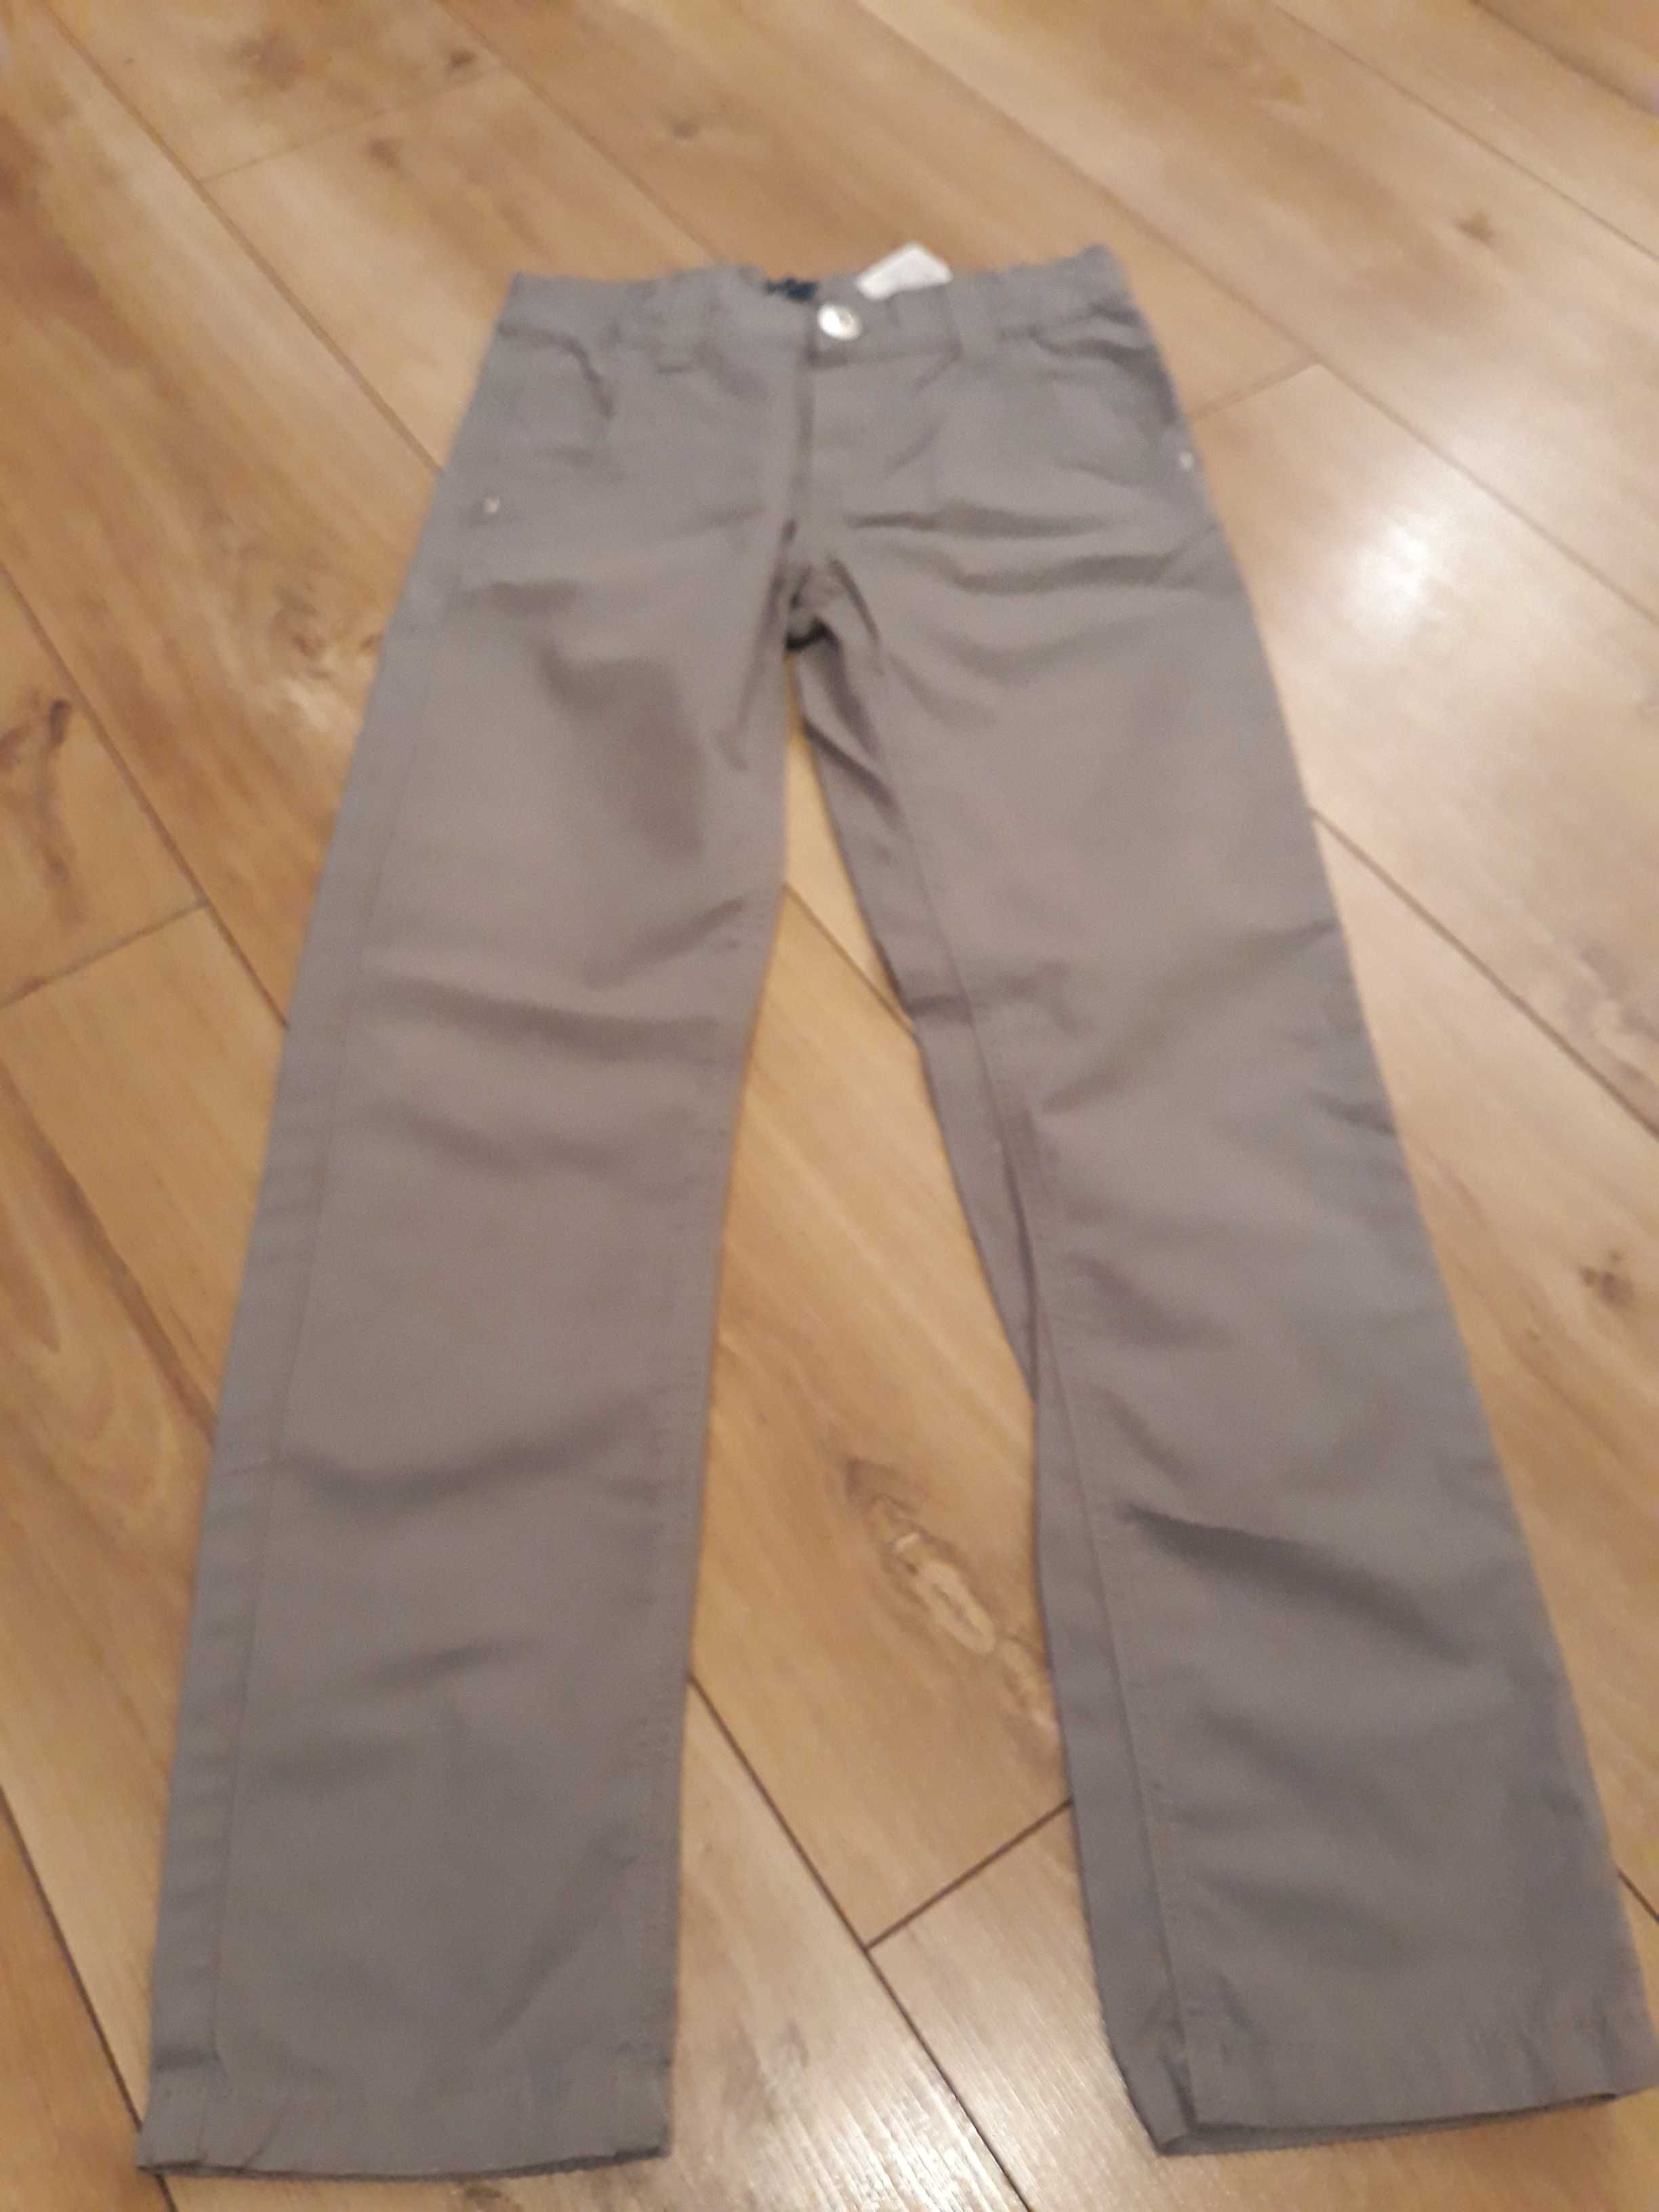 Spodnie chłopięce firmy 5-10-15 rozmiar 134cm